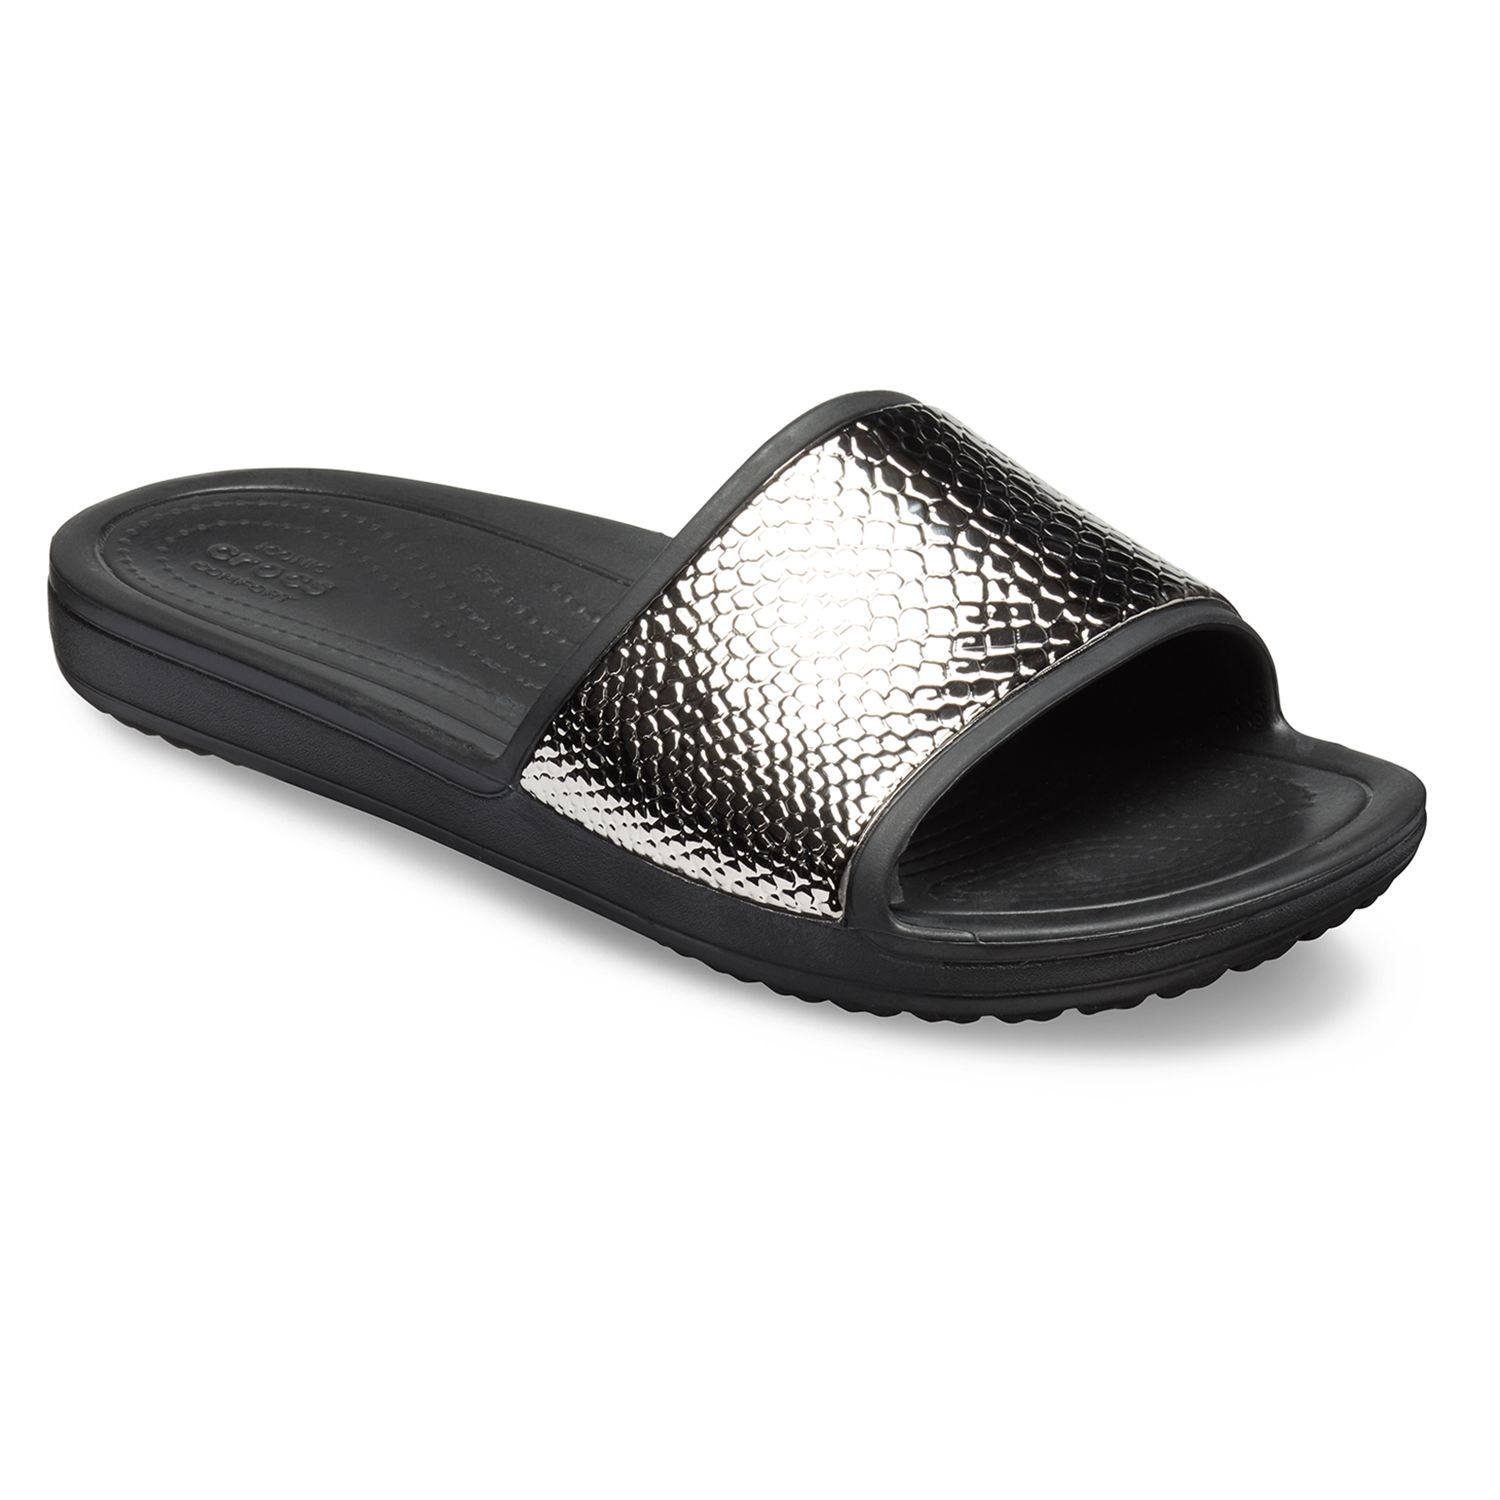 crocs women's sloane slide sandal